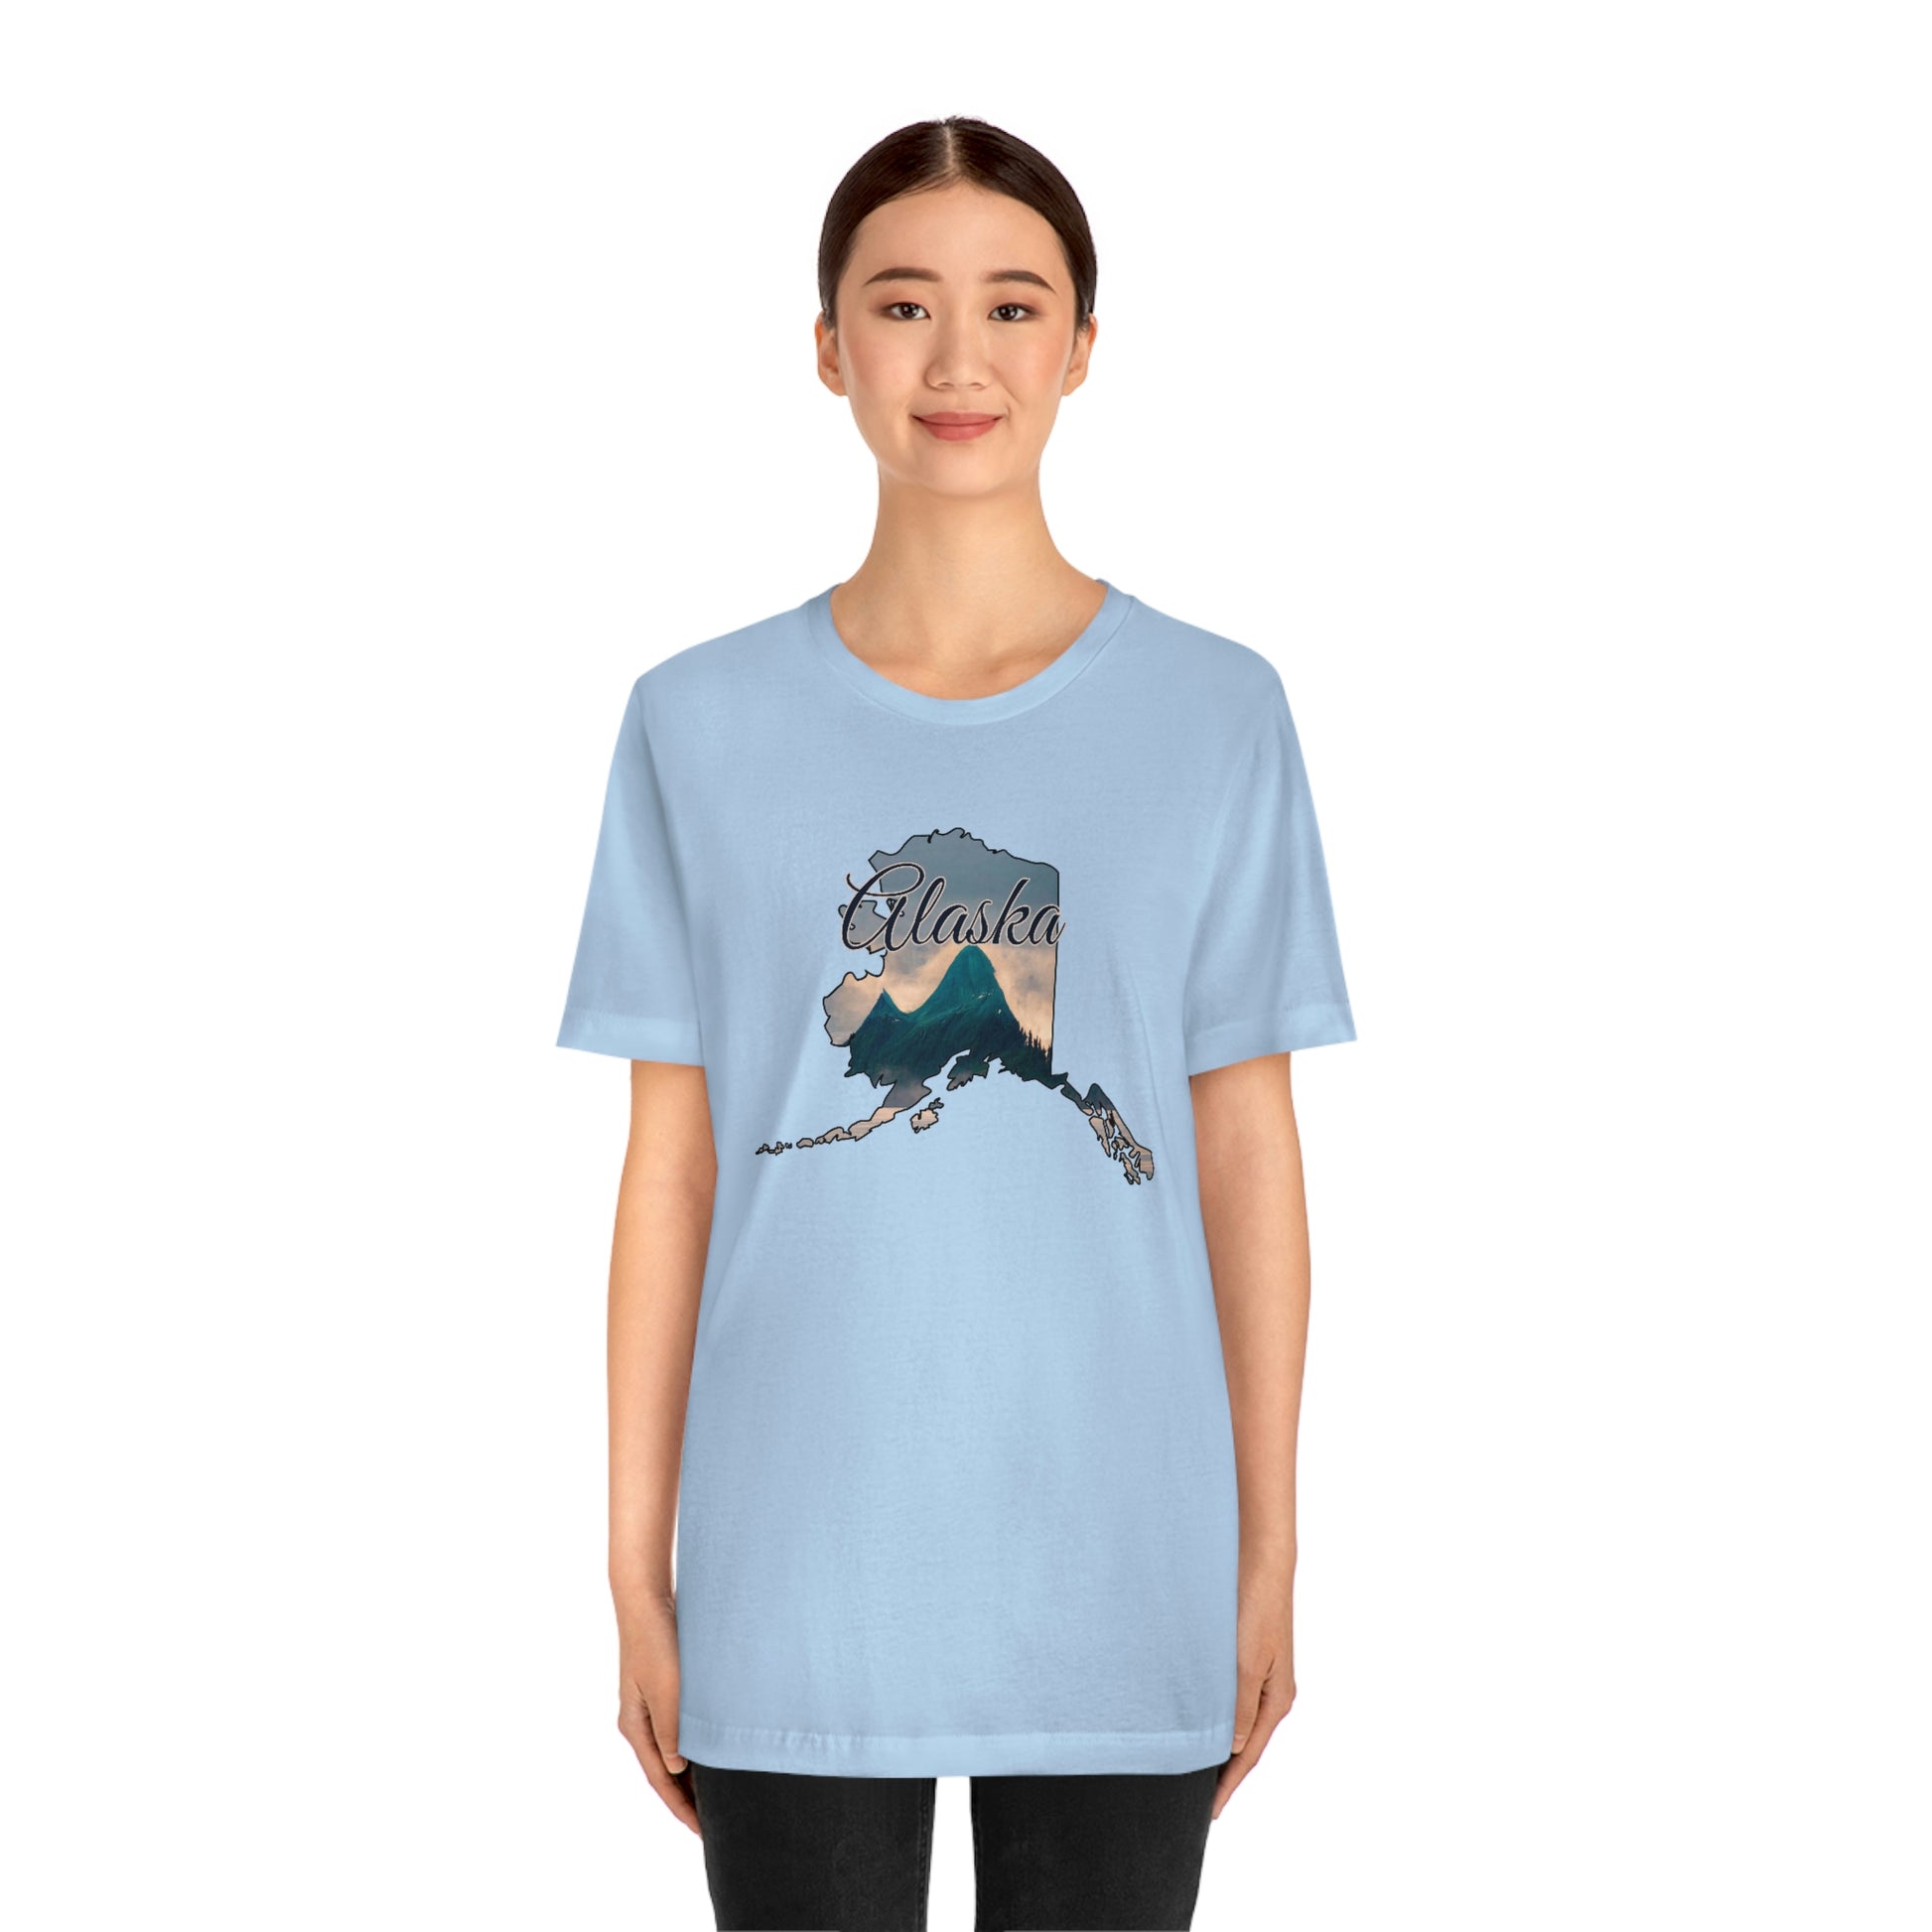 Alaska Mountains Unisex Jersey Short Sleeve T-shirt